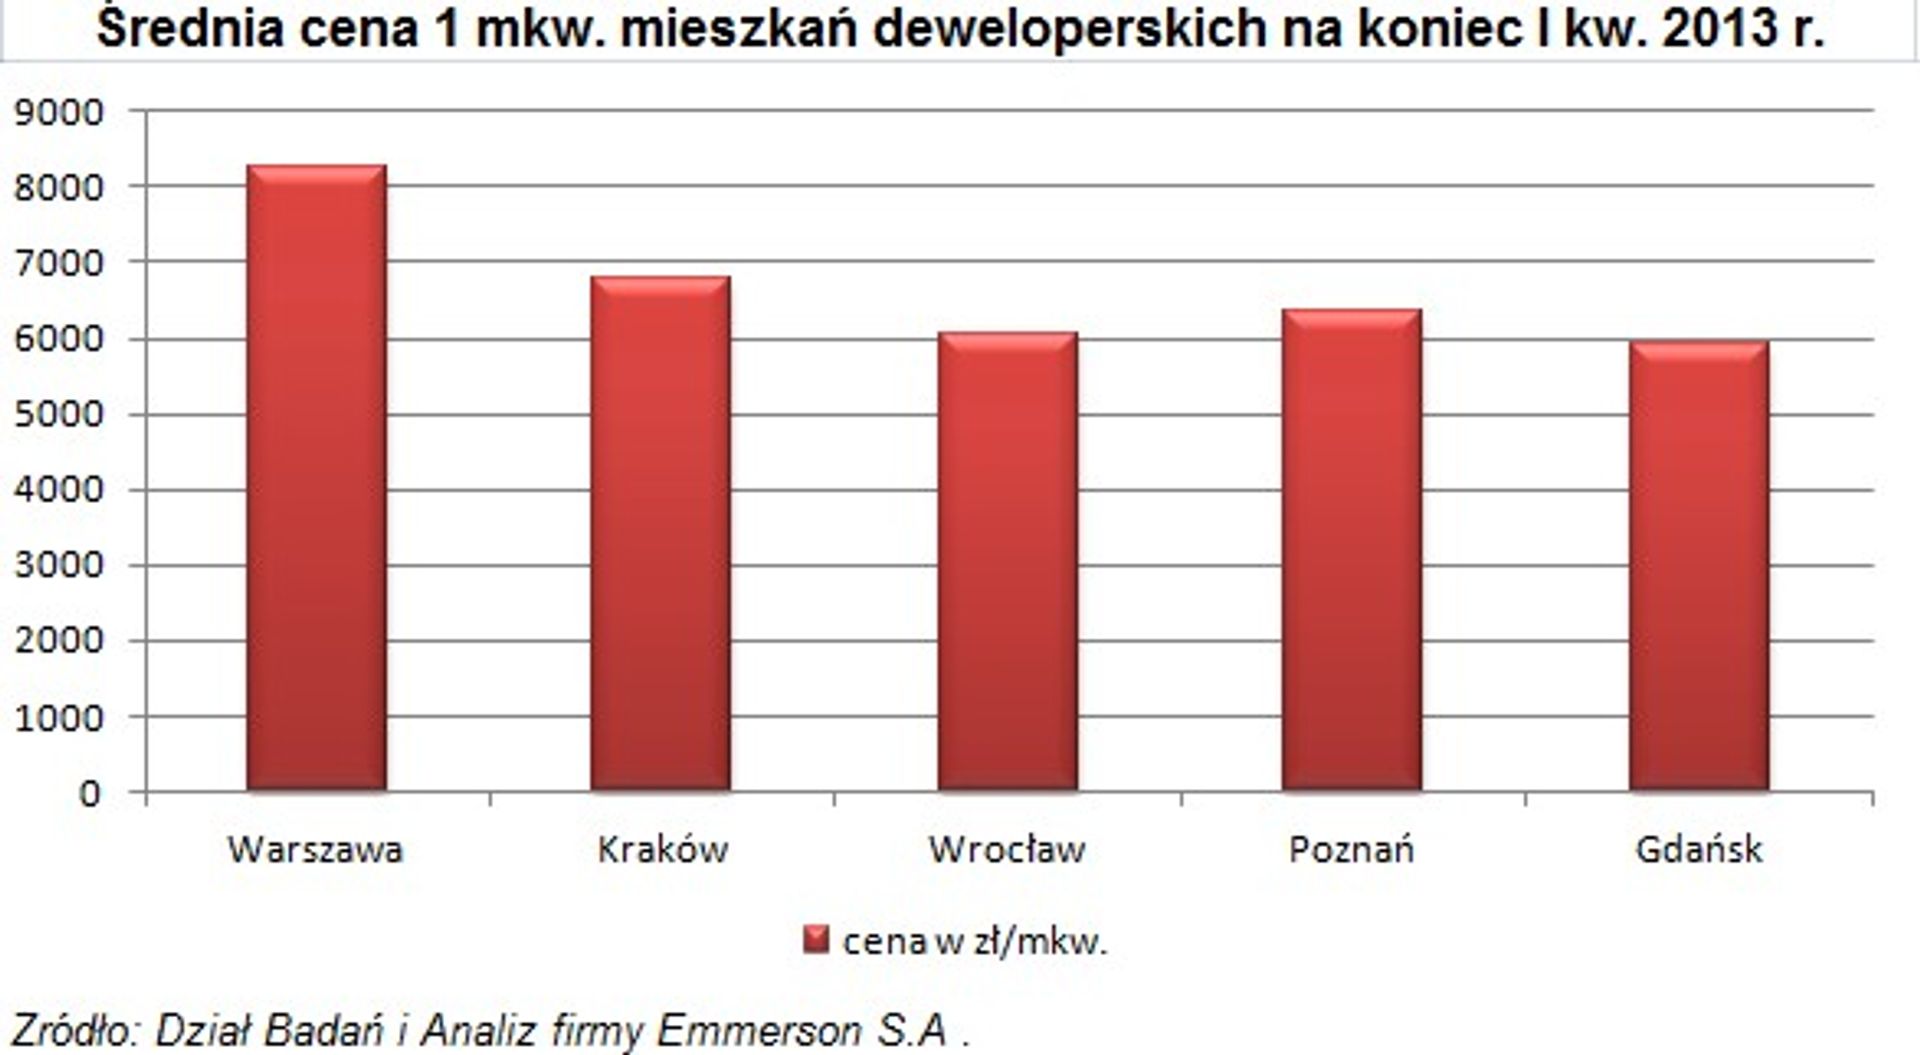  Ceny nowych mieszkań w I kw. 2013 r.